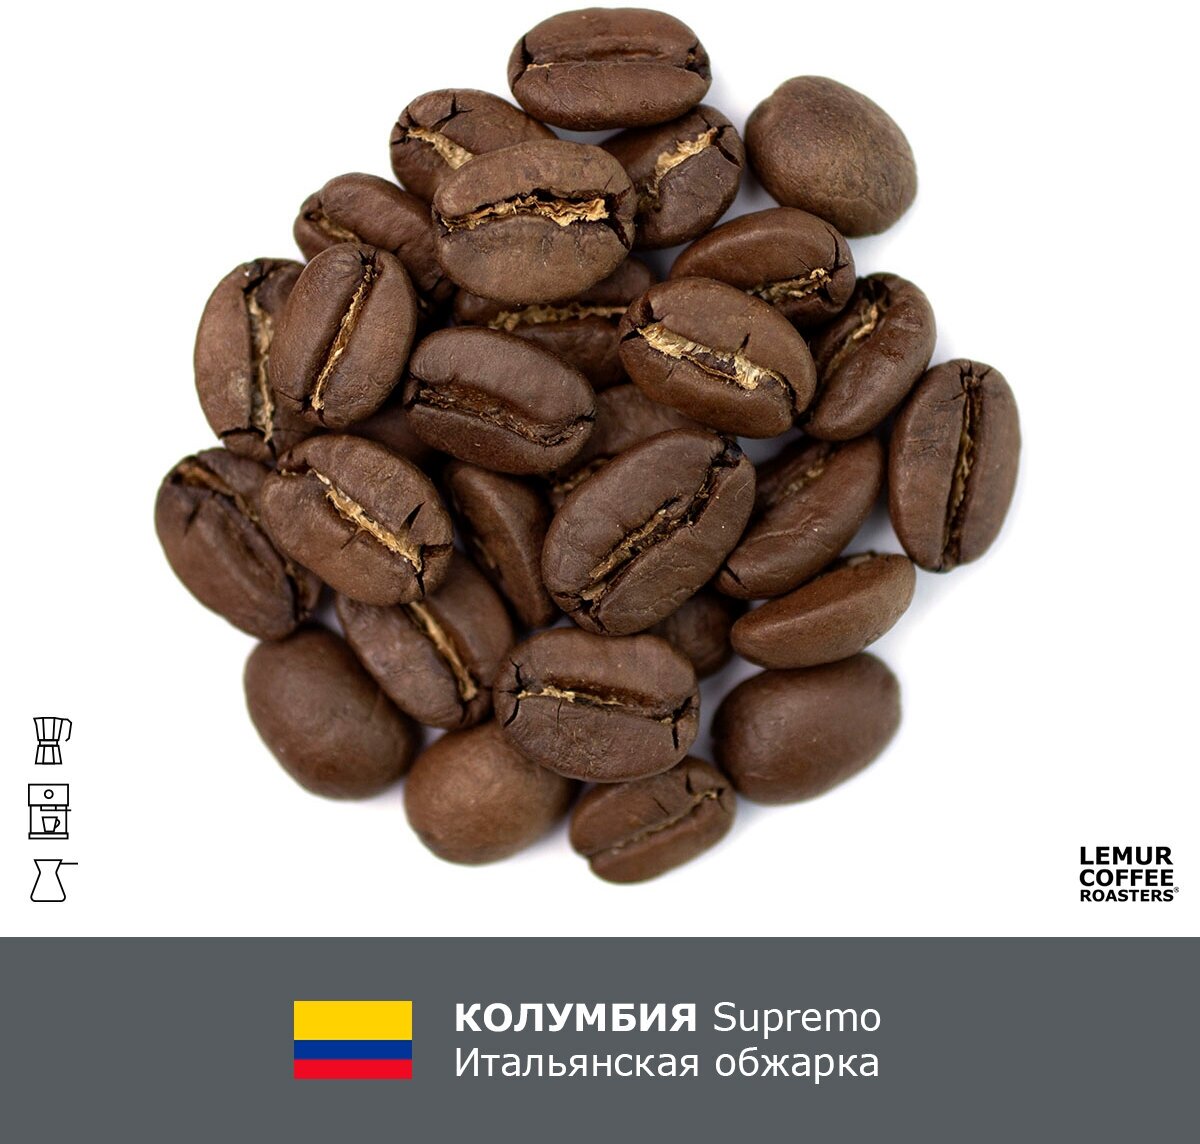 Свежеобжаренный кофе в зернах Колумбия итальянская обжарка Lemur Coffee Roasters, 1кг